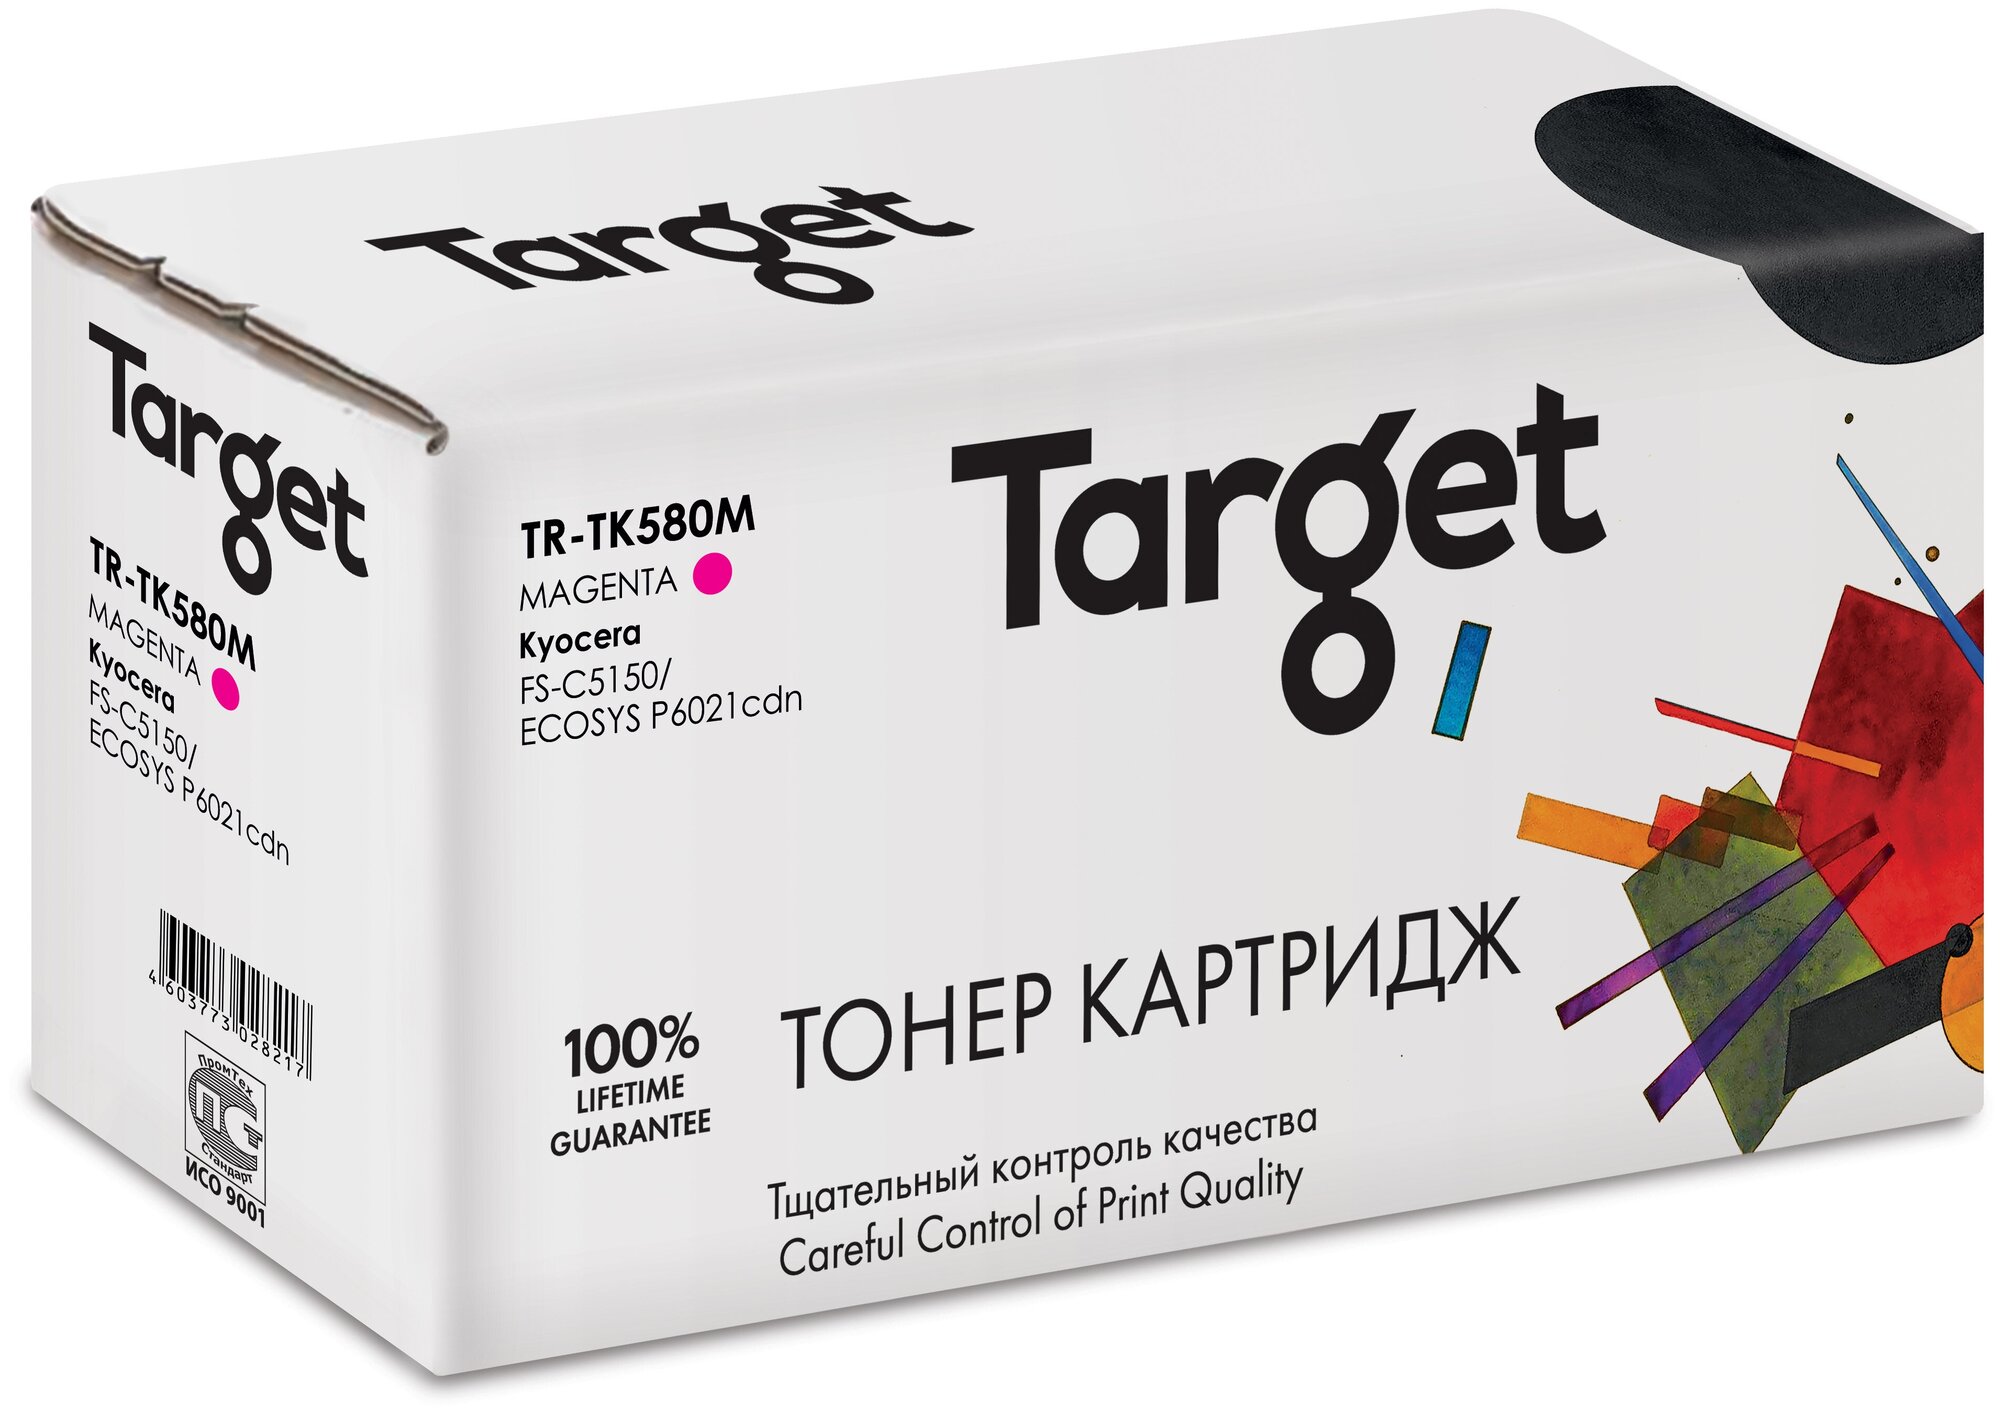 Тонер-картридж Target TK580M, пурпурный, для лазерного принтера, совместимый